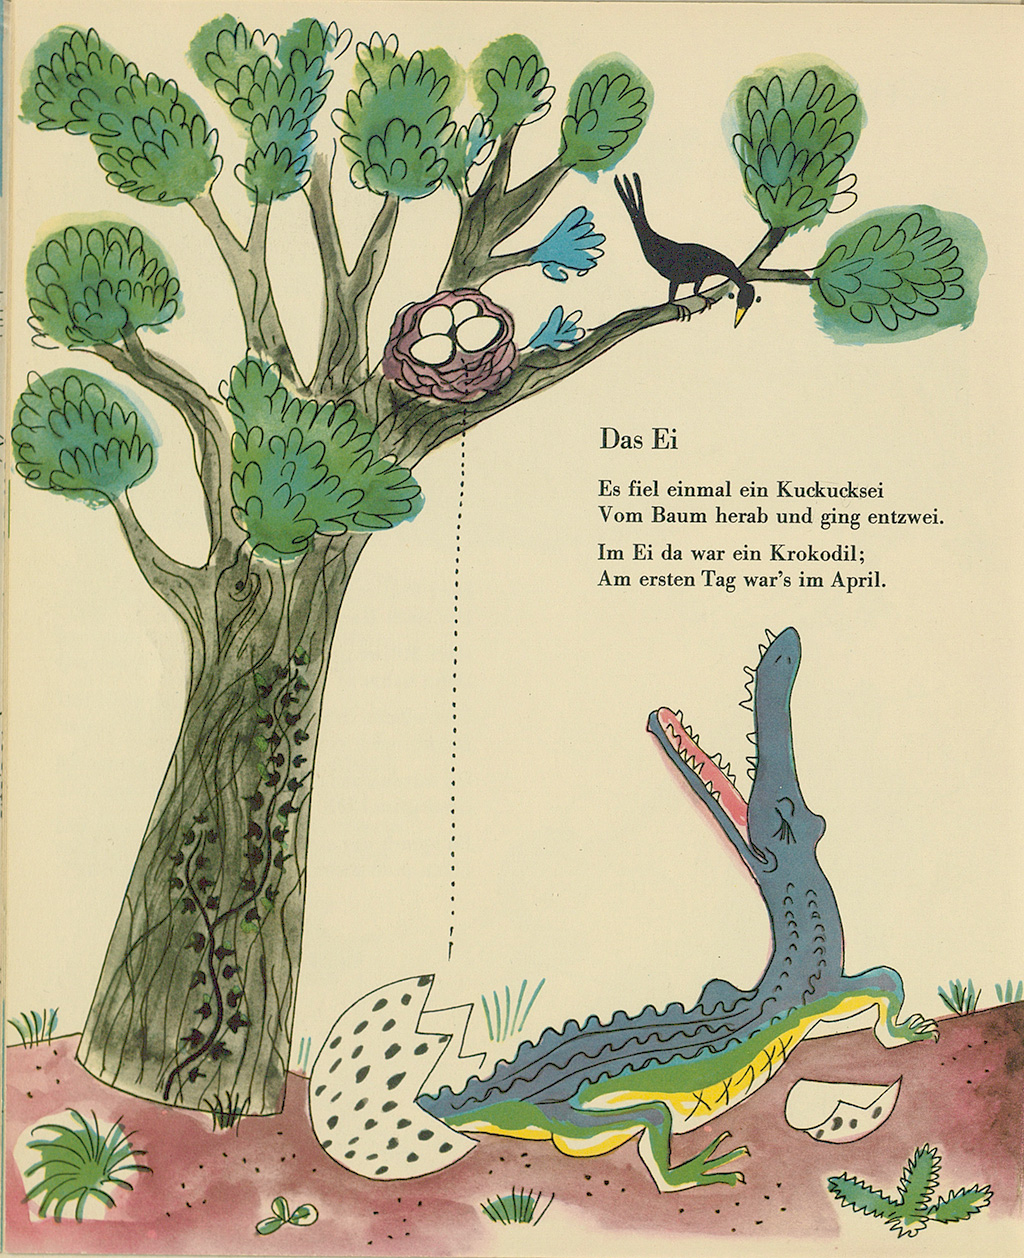 Gezeigt wird eine Seite aus dem Kinderbuch für kleine Wesen von Joachim Ringelnatz aus dem Jahr 1959. Zu sehen ist ein Baum mit vier Eiern in einem Vogelnest, aus dem ein Ei heruntergefallen ist, aus dem ein Krokodil schlüpft. Der Text lautet: Das Ei. Es fiel einmal ein Kuckucksei vom Baum herab und ging entzwei. Im Ei ida war ein Krokodil; am ersten Tag war’s im April.